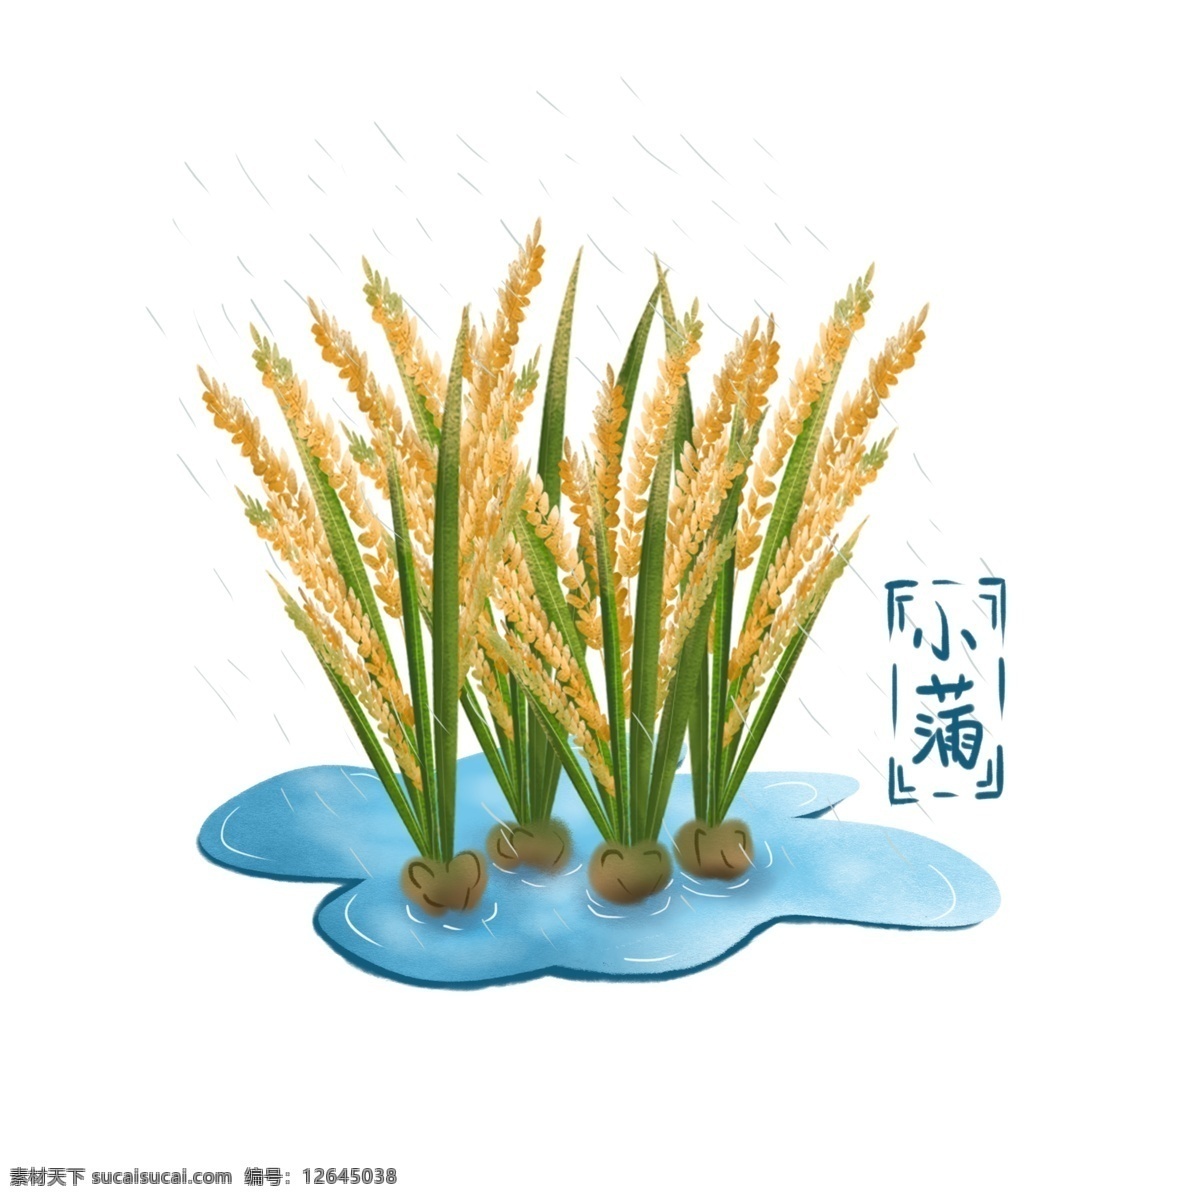 手绘 小满 田里 即将 成熟 水稻 手绘风 稻子 稻谷 水 粮食 植物 元素 可商用